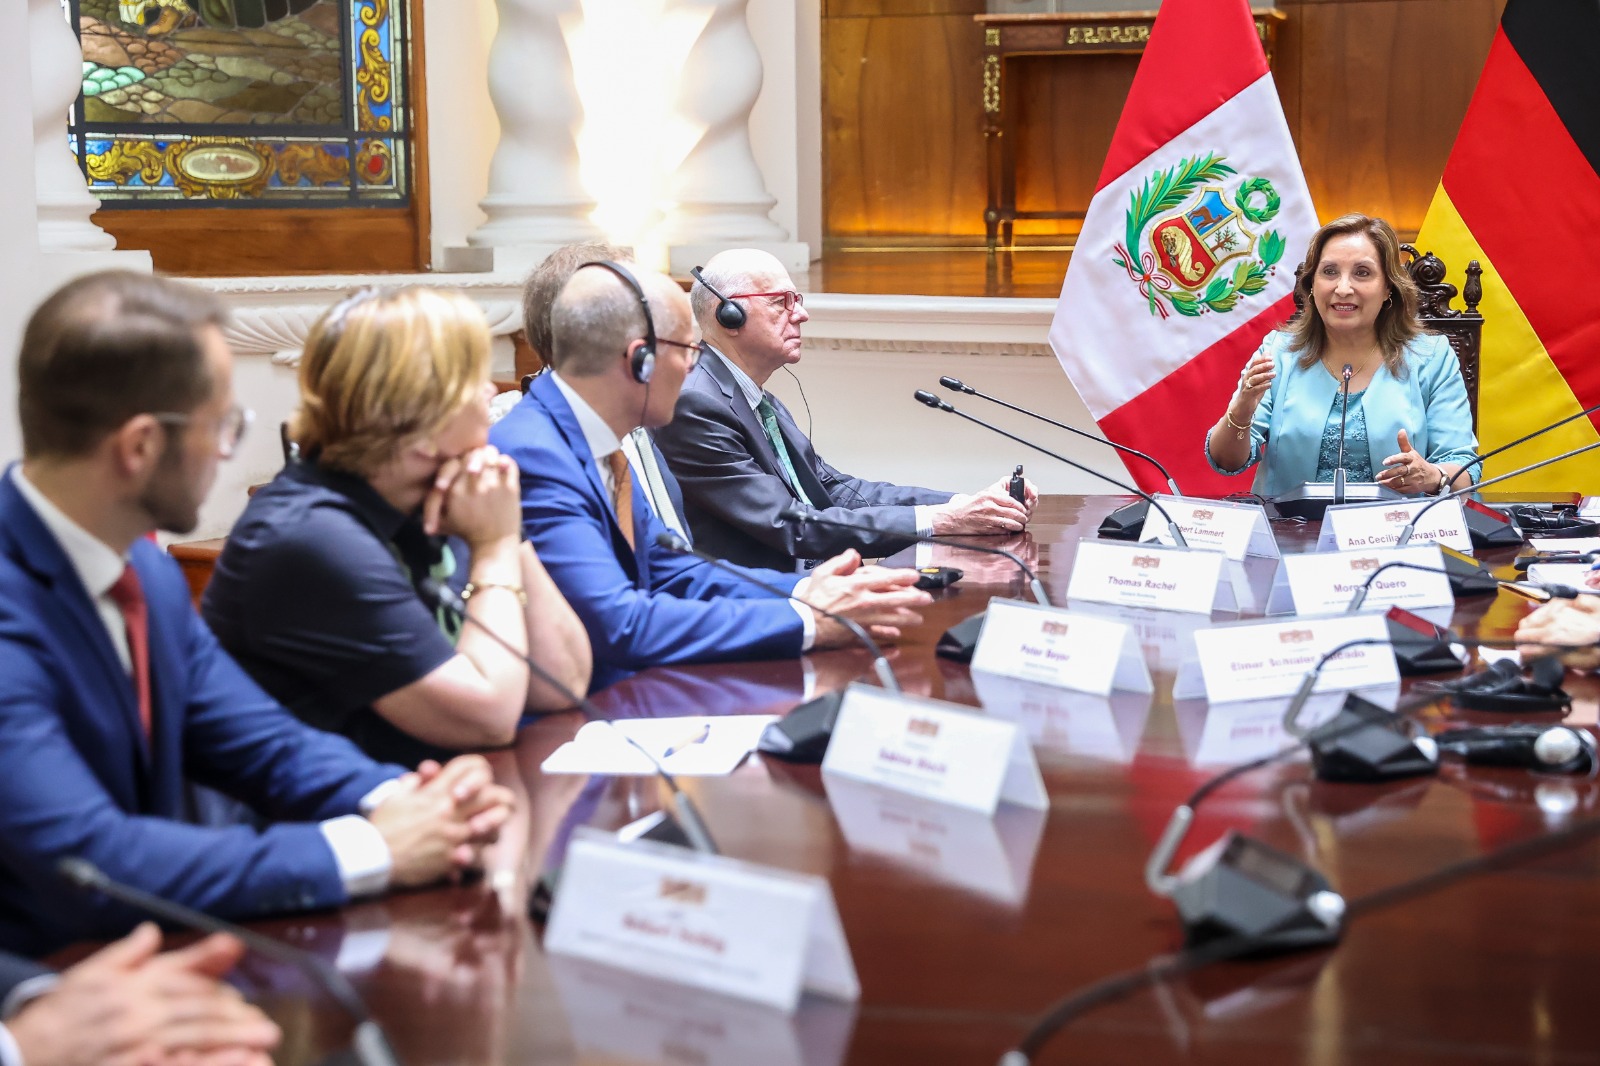 PERÚ: Perú es visto como socio confiable por políticos y empresarios de Alemania